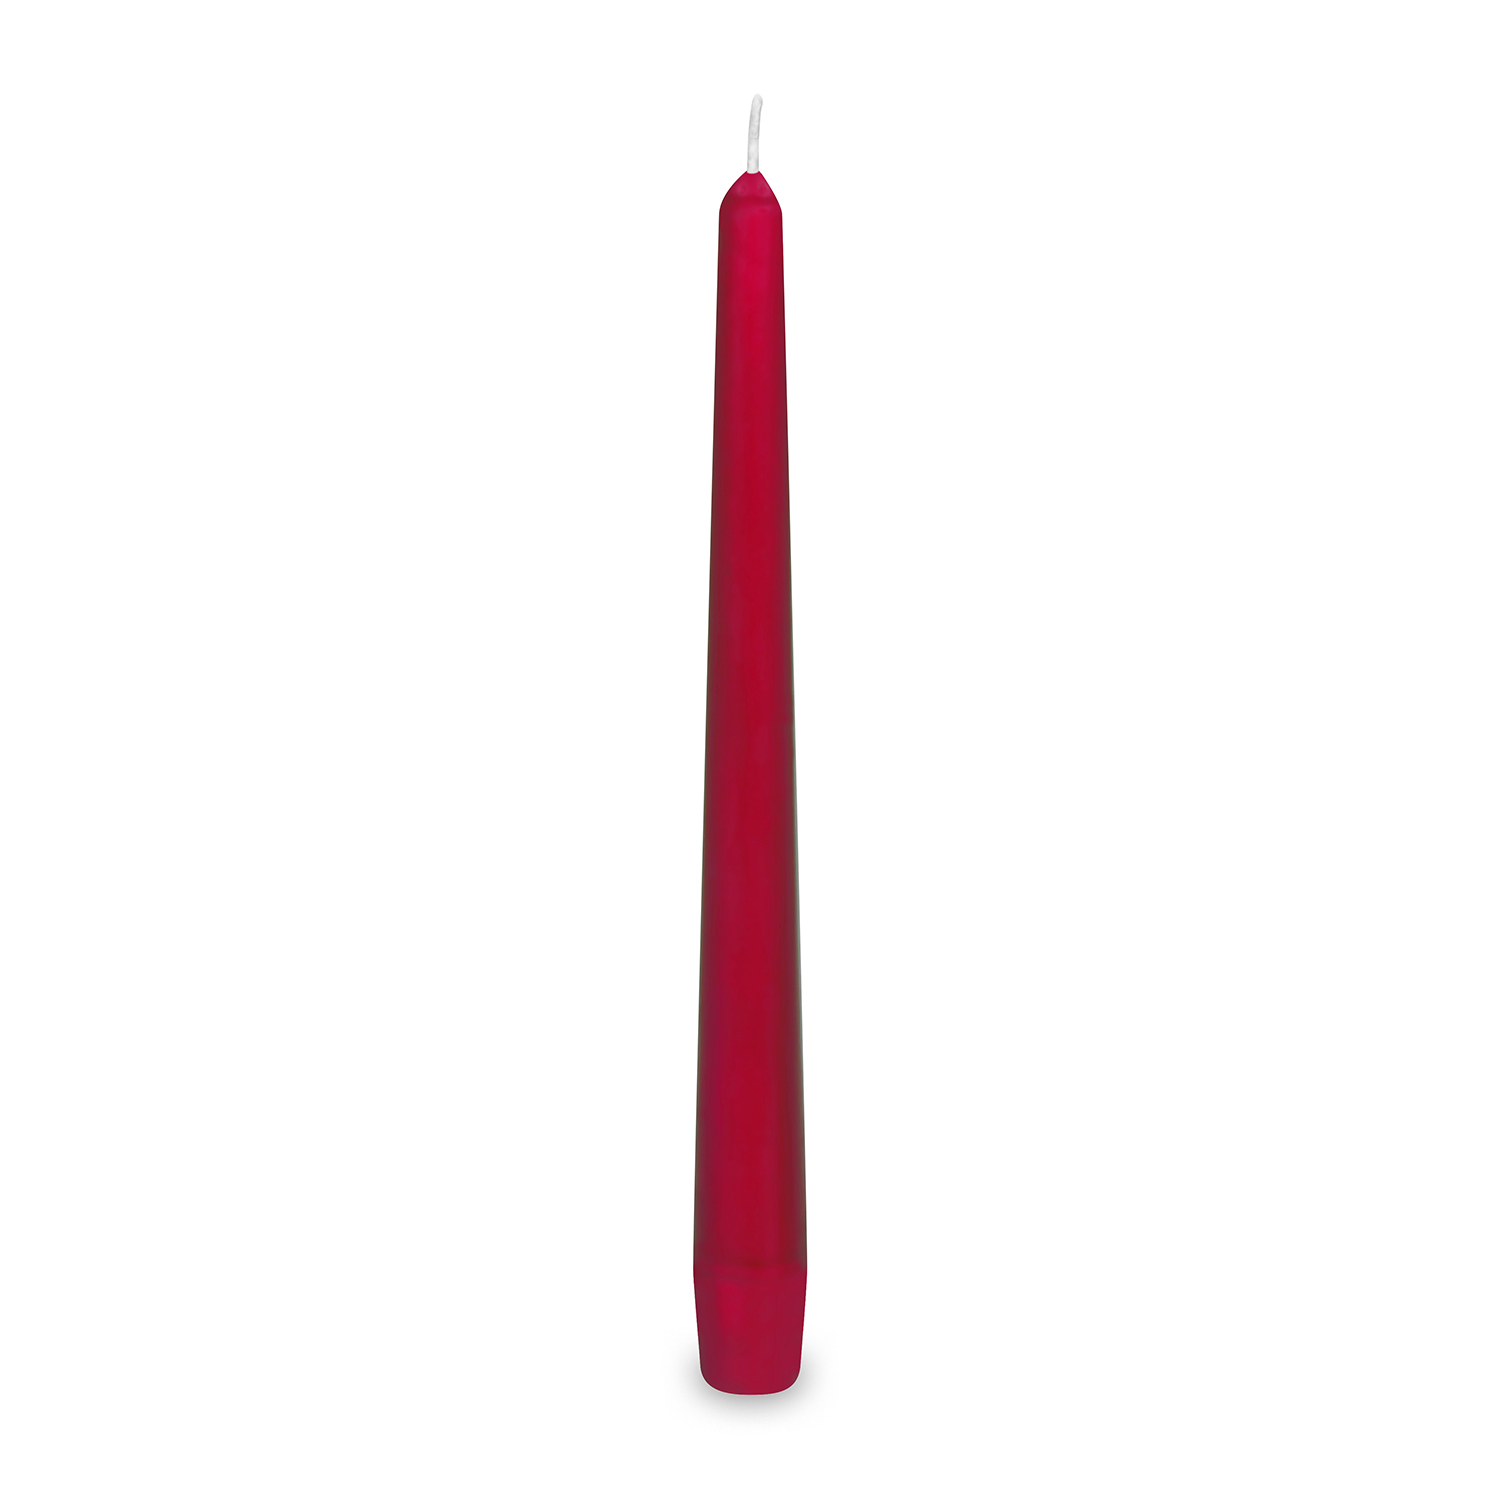 Svíčky 24 cm / 10 ks, bordó, kónické